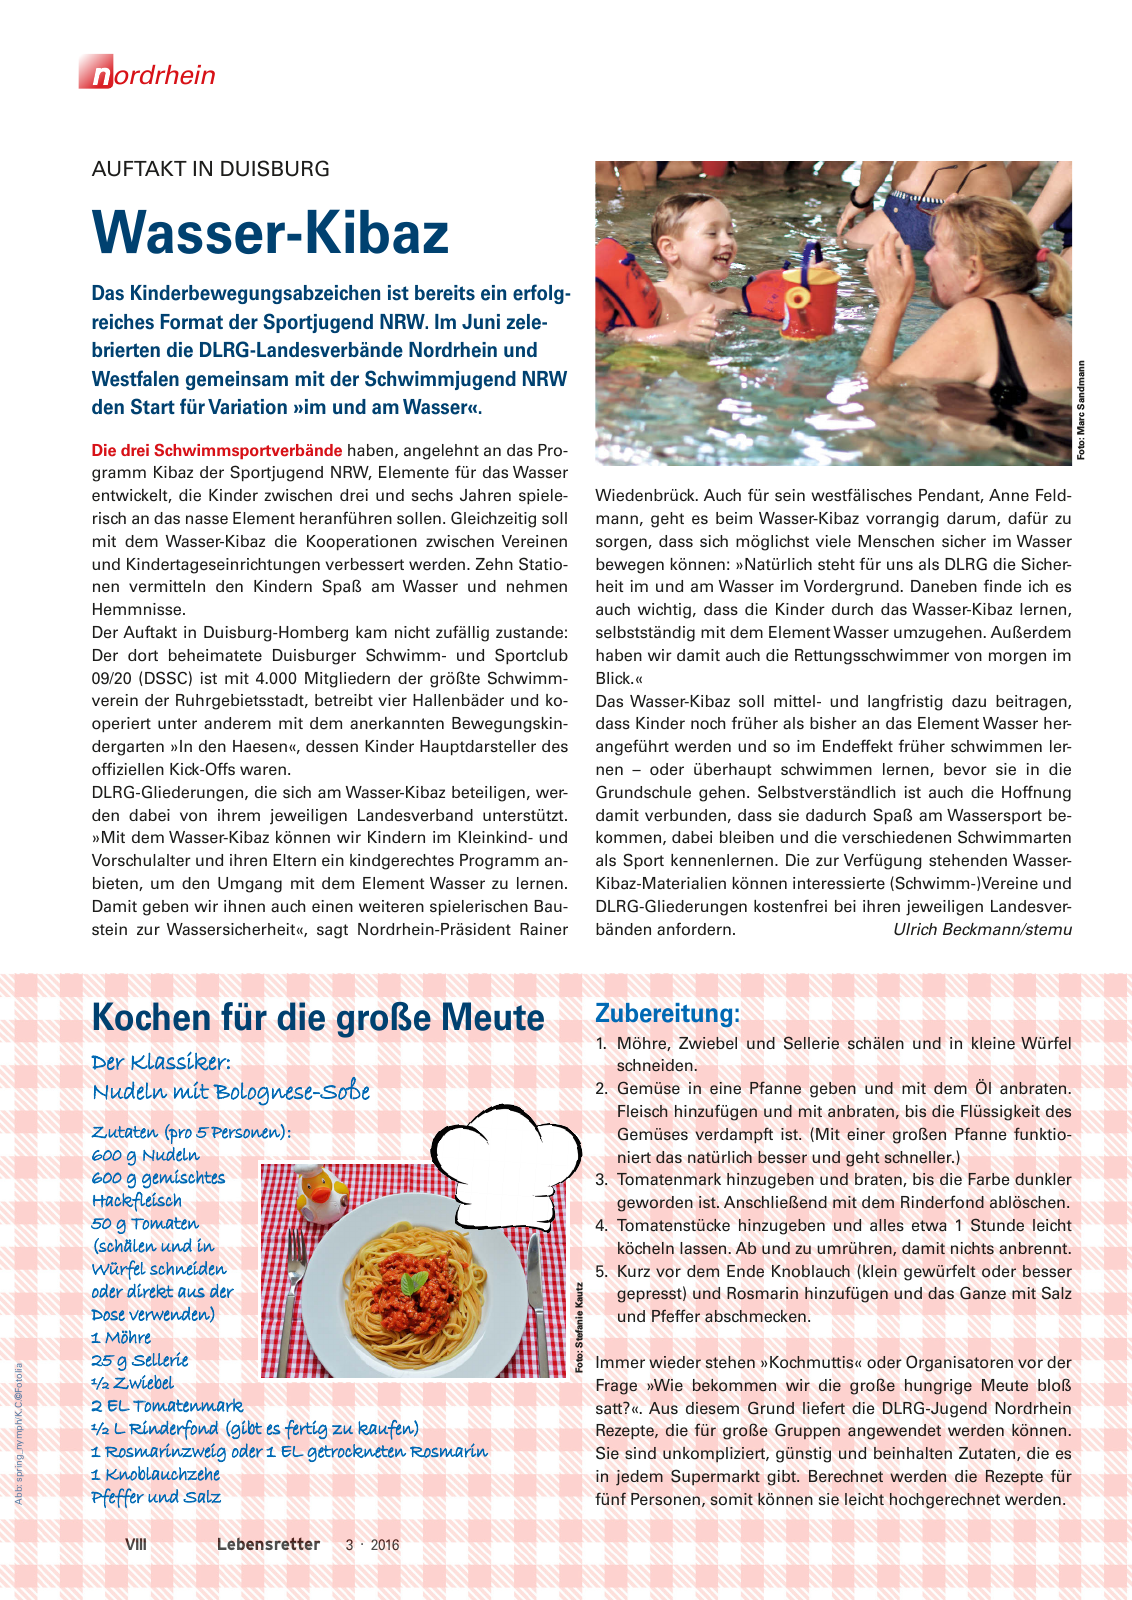 Vorschau Lebensretter 3/2016 - Regionalausgabe Nordrhein Seite 10